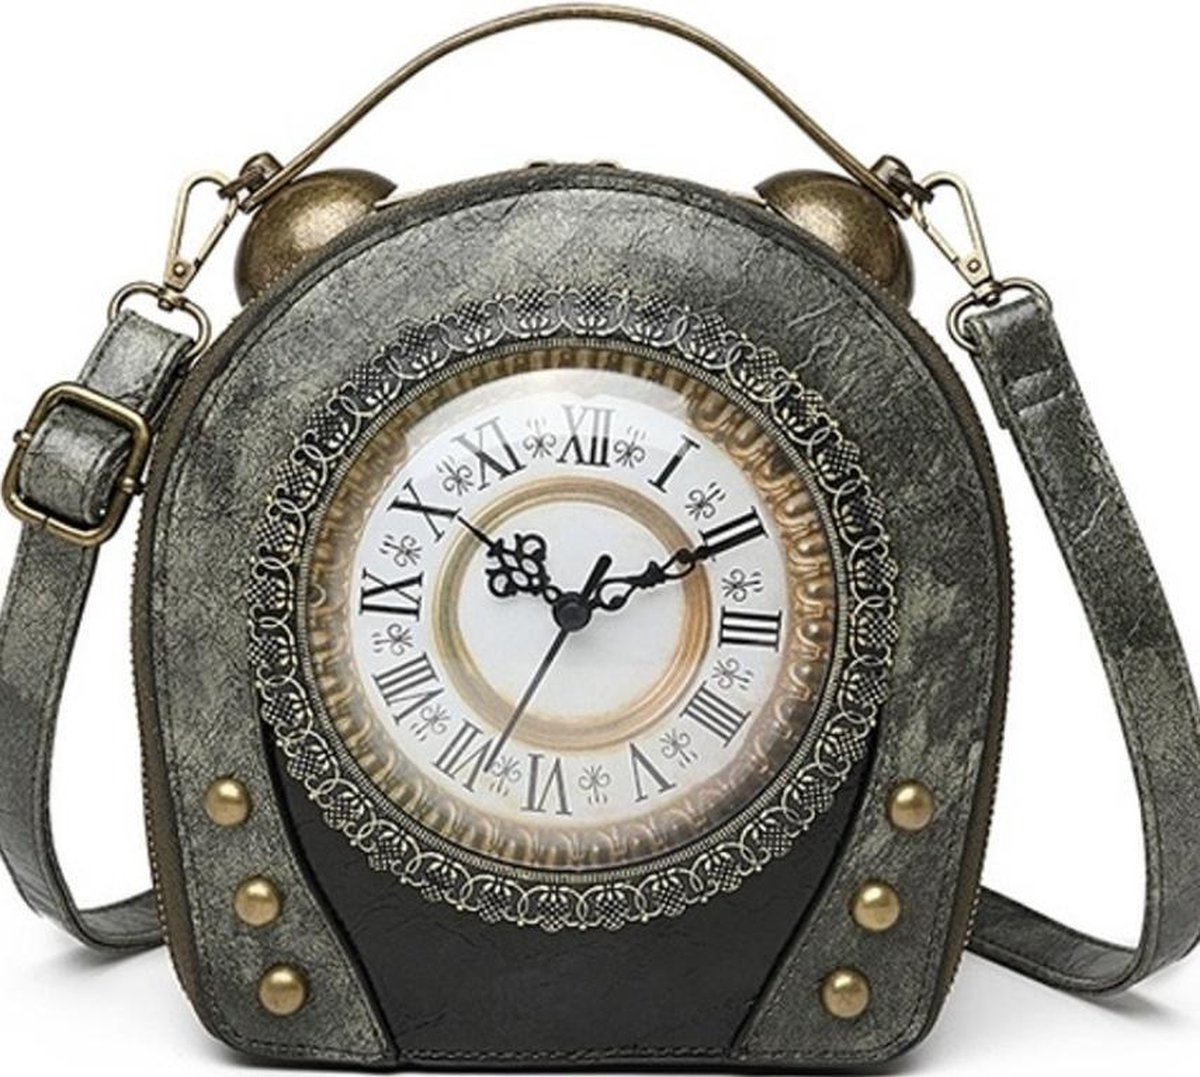 Steampunk Vintage Klok handtas met echt werkende Klok (grijs)